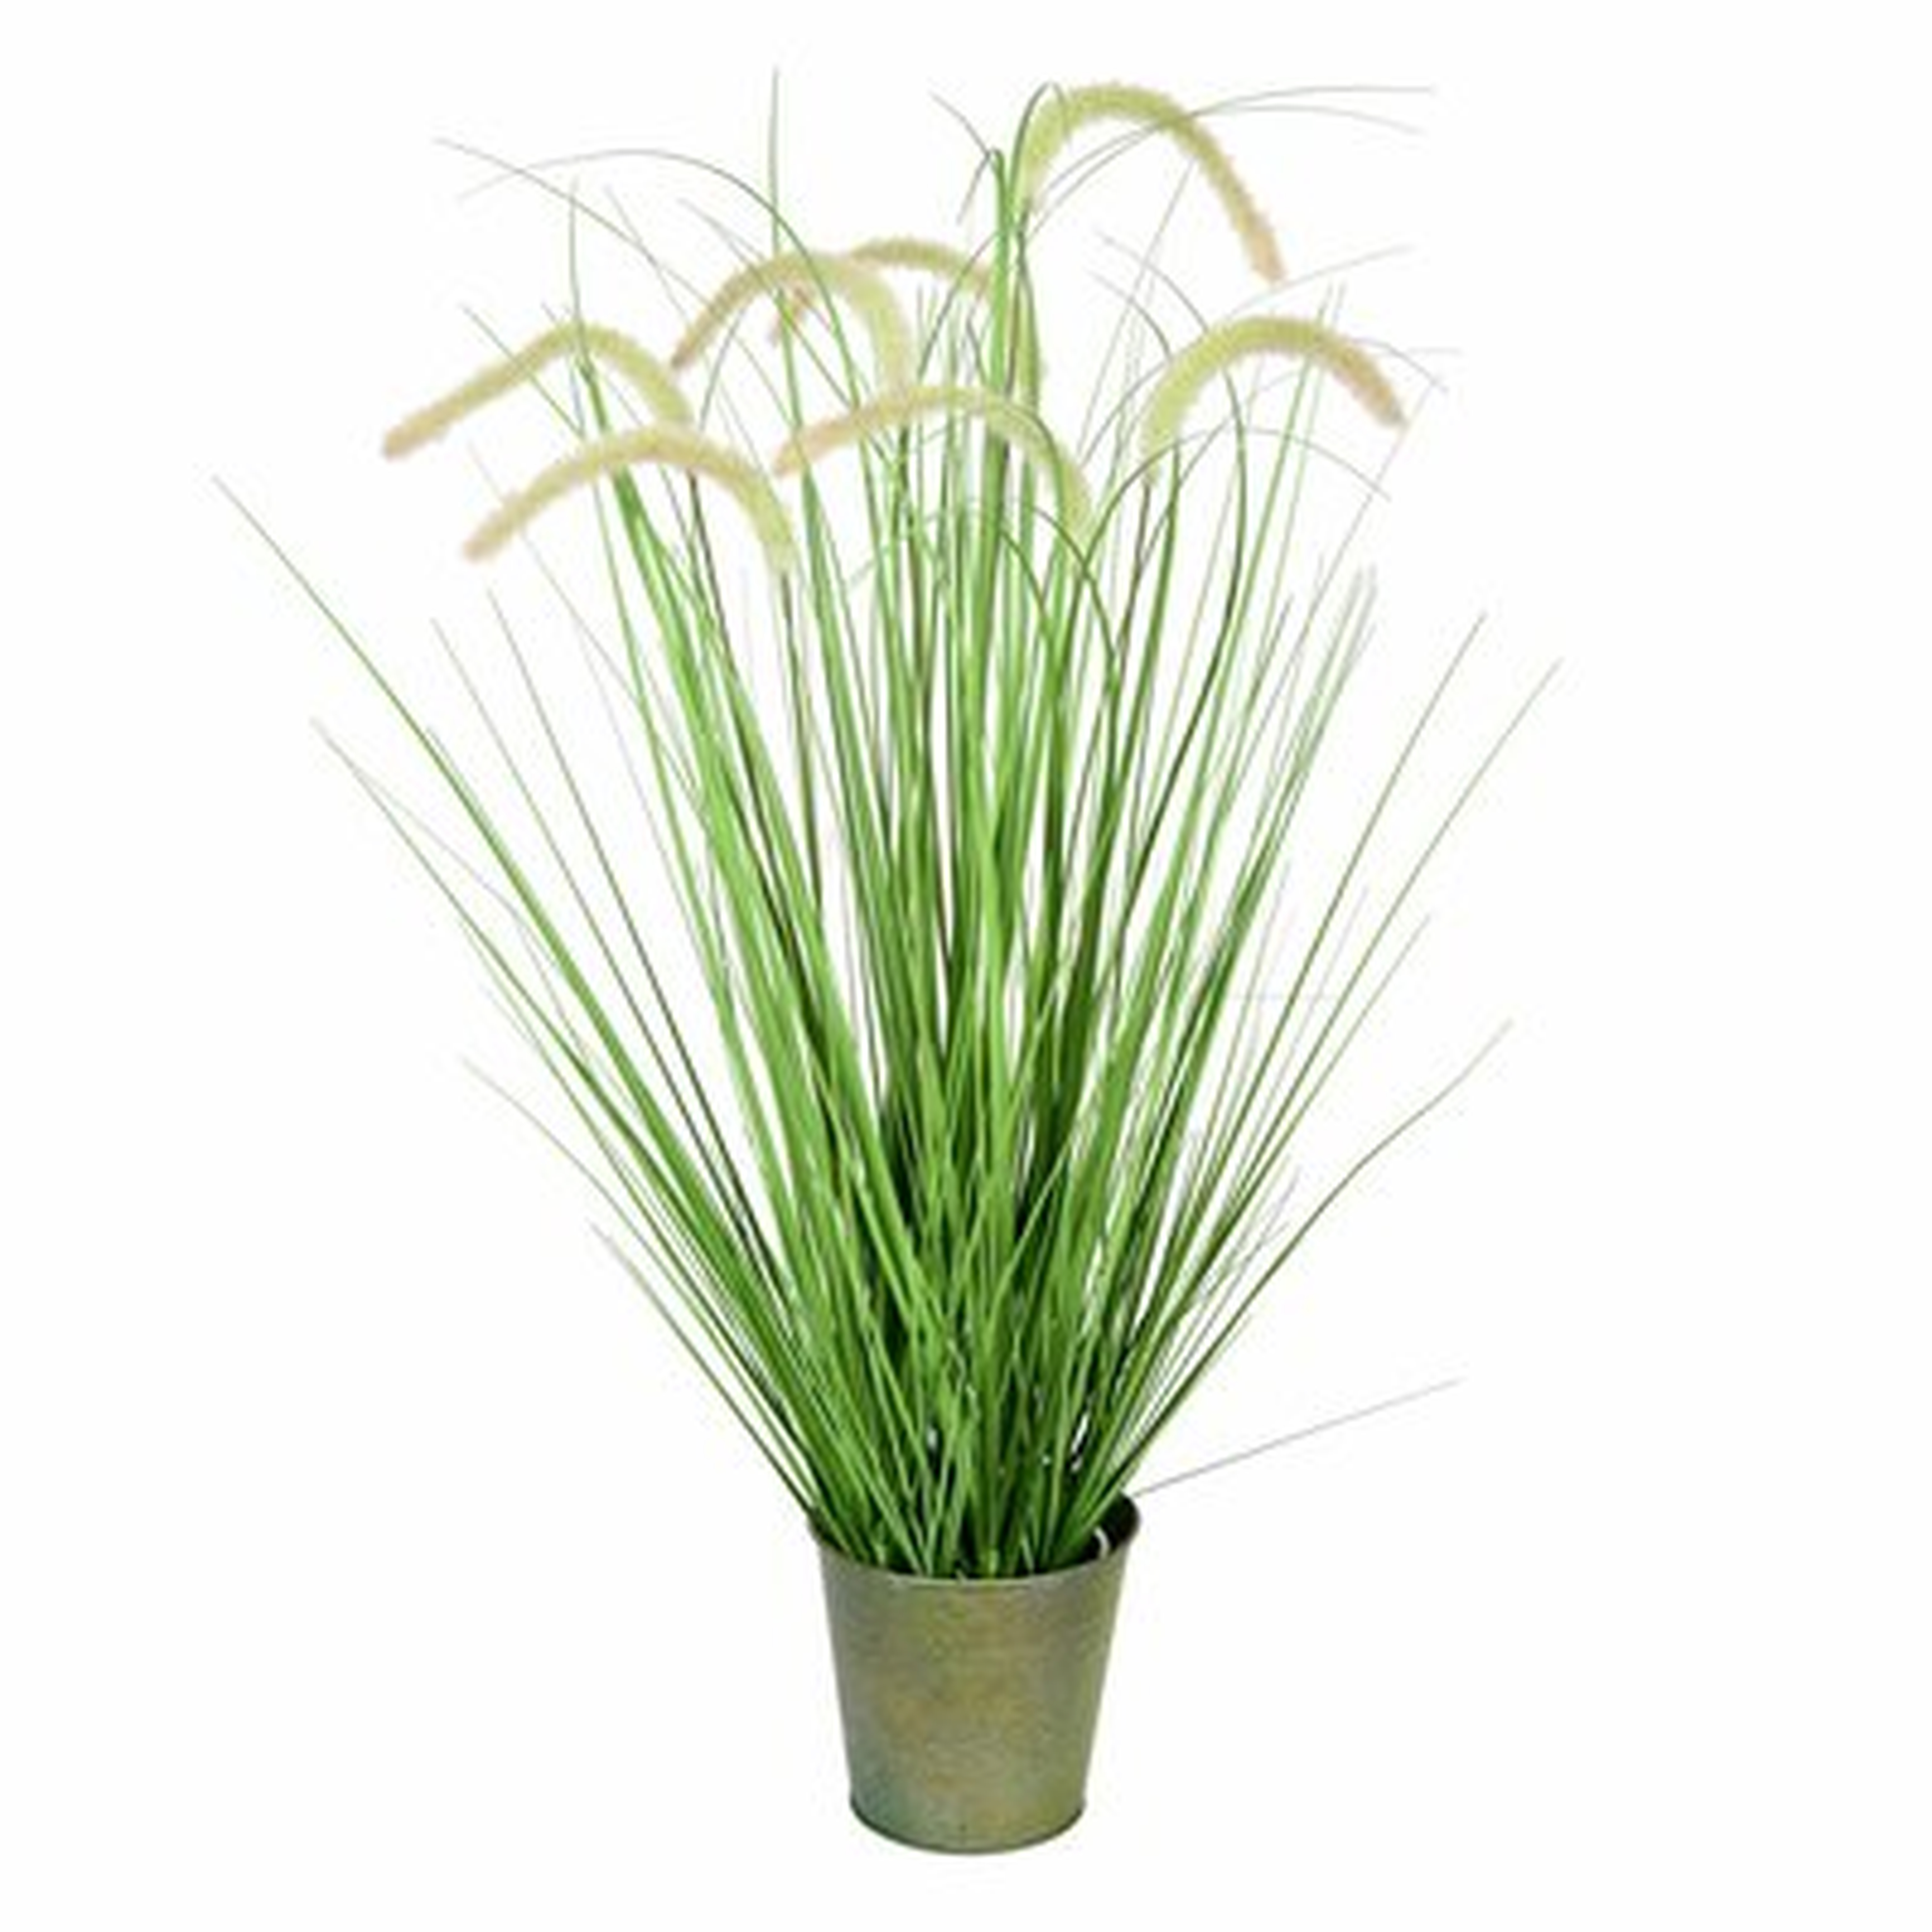 Artificial Cattail Grass in Pot - Wayfair